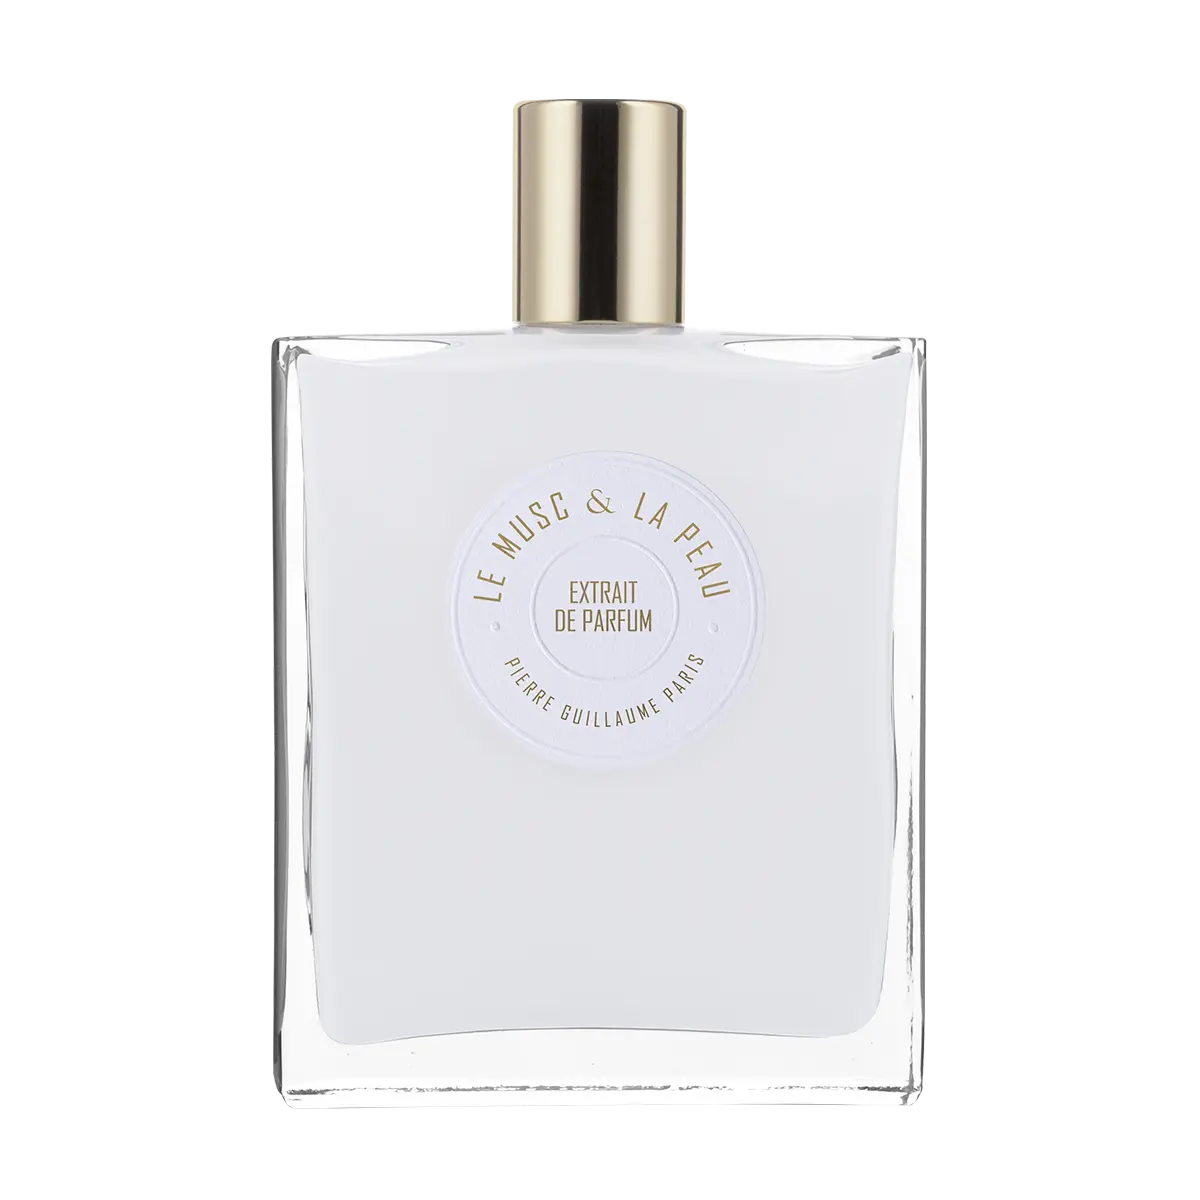 Pierre Guillaume Le Musc & La Peau Extraits de Parfum